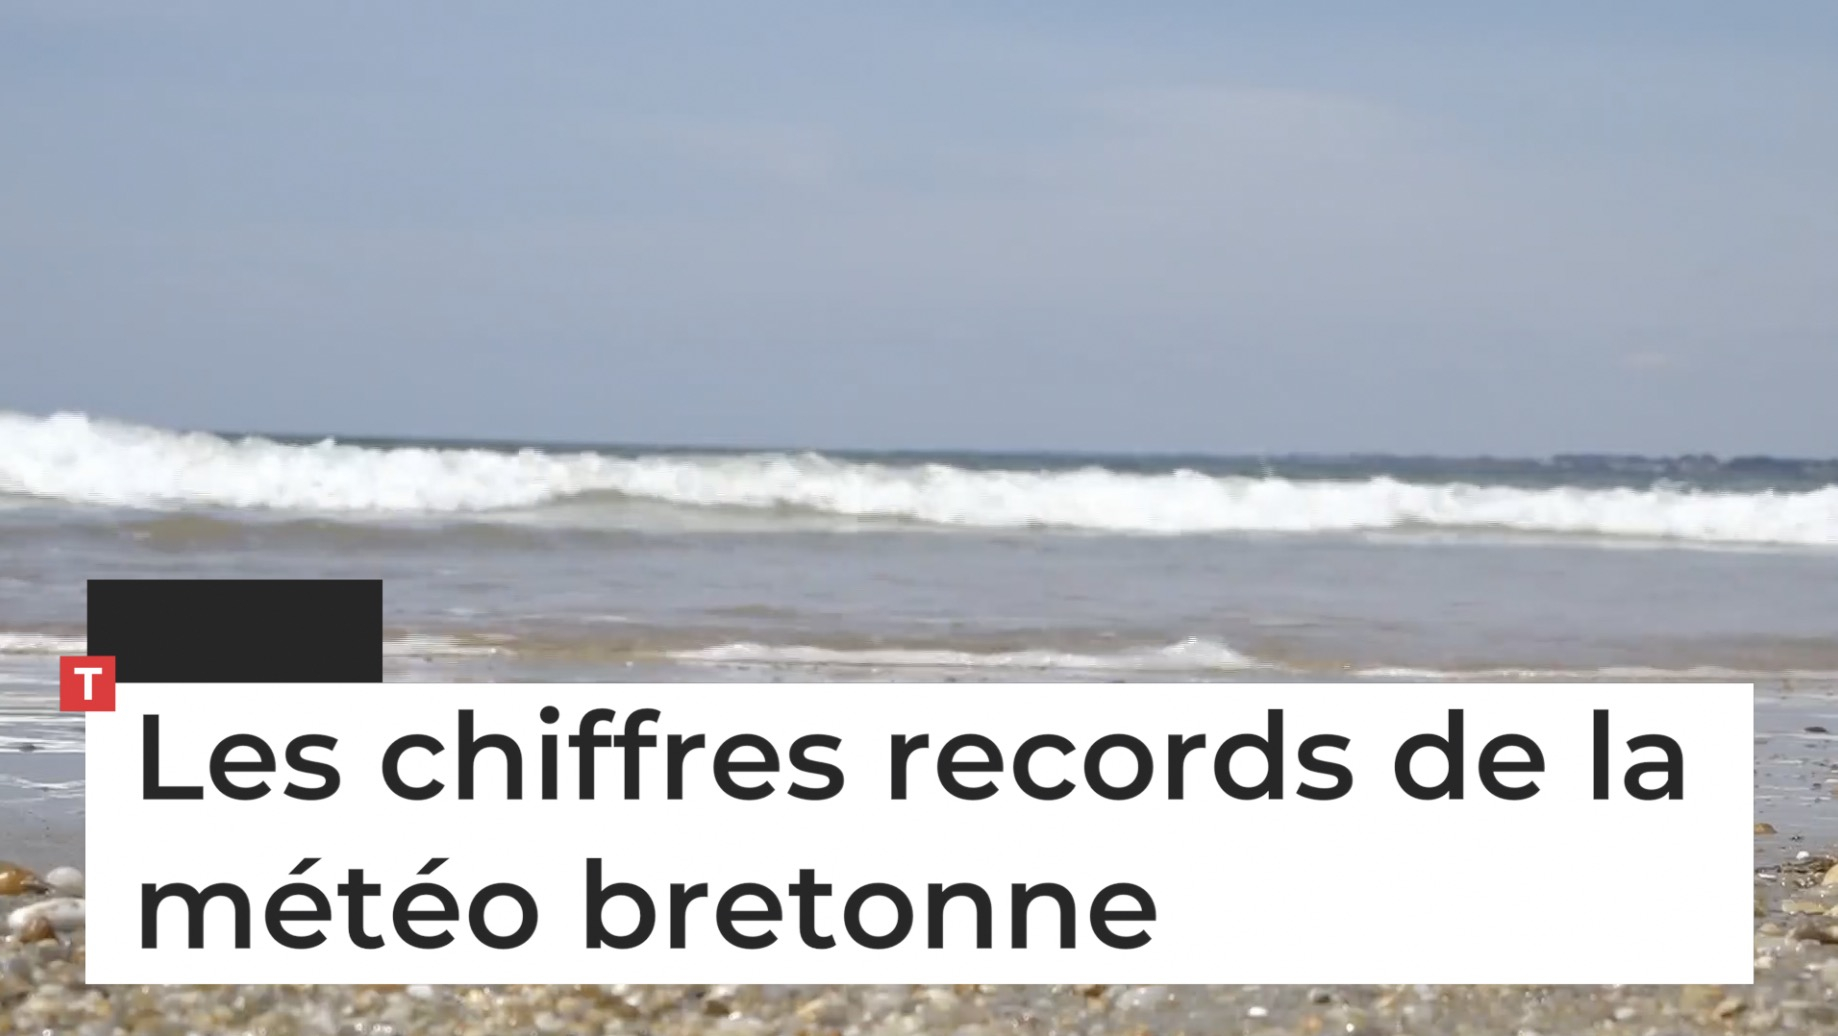 Les chiffres records de la météo bretonne (Le Télégramme)